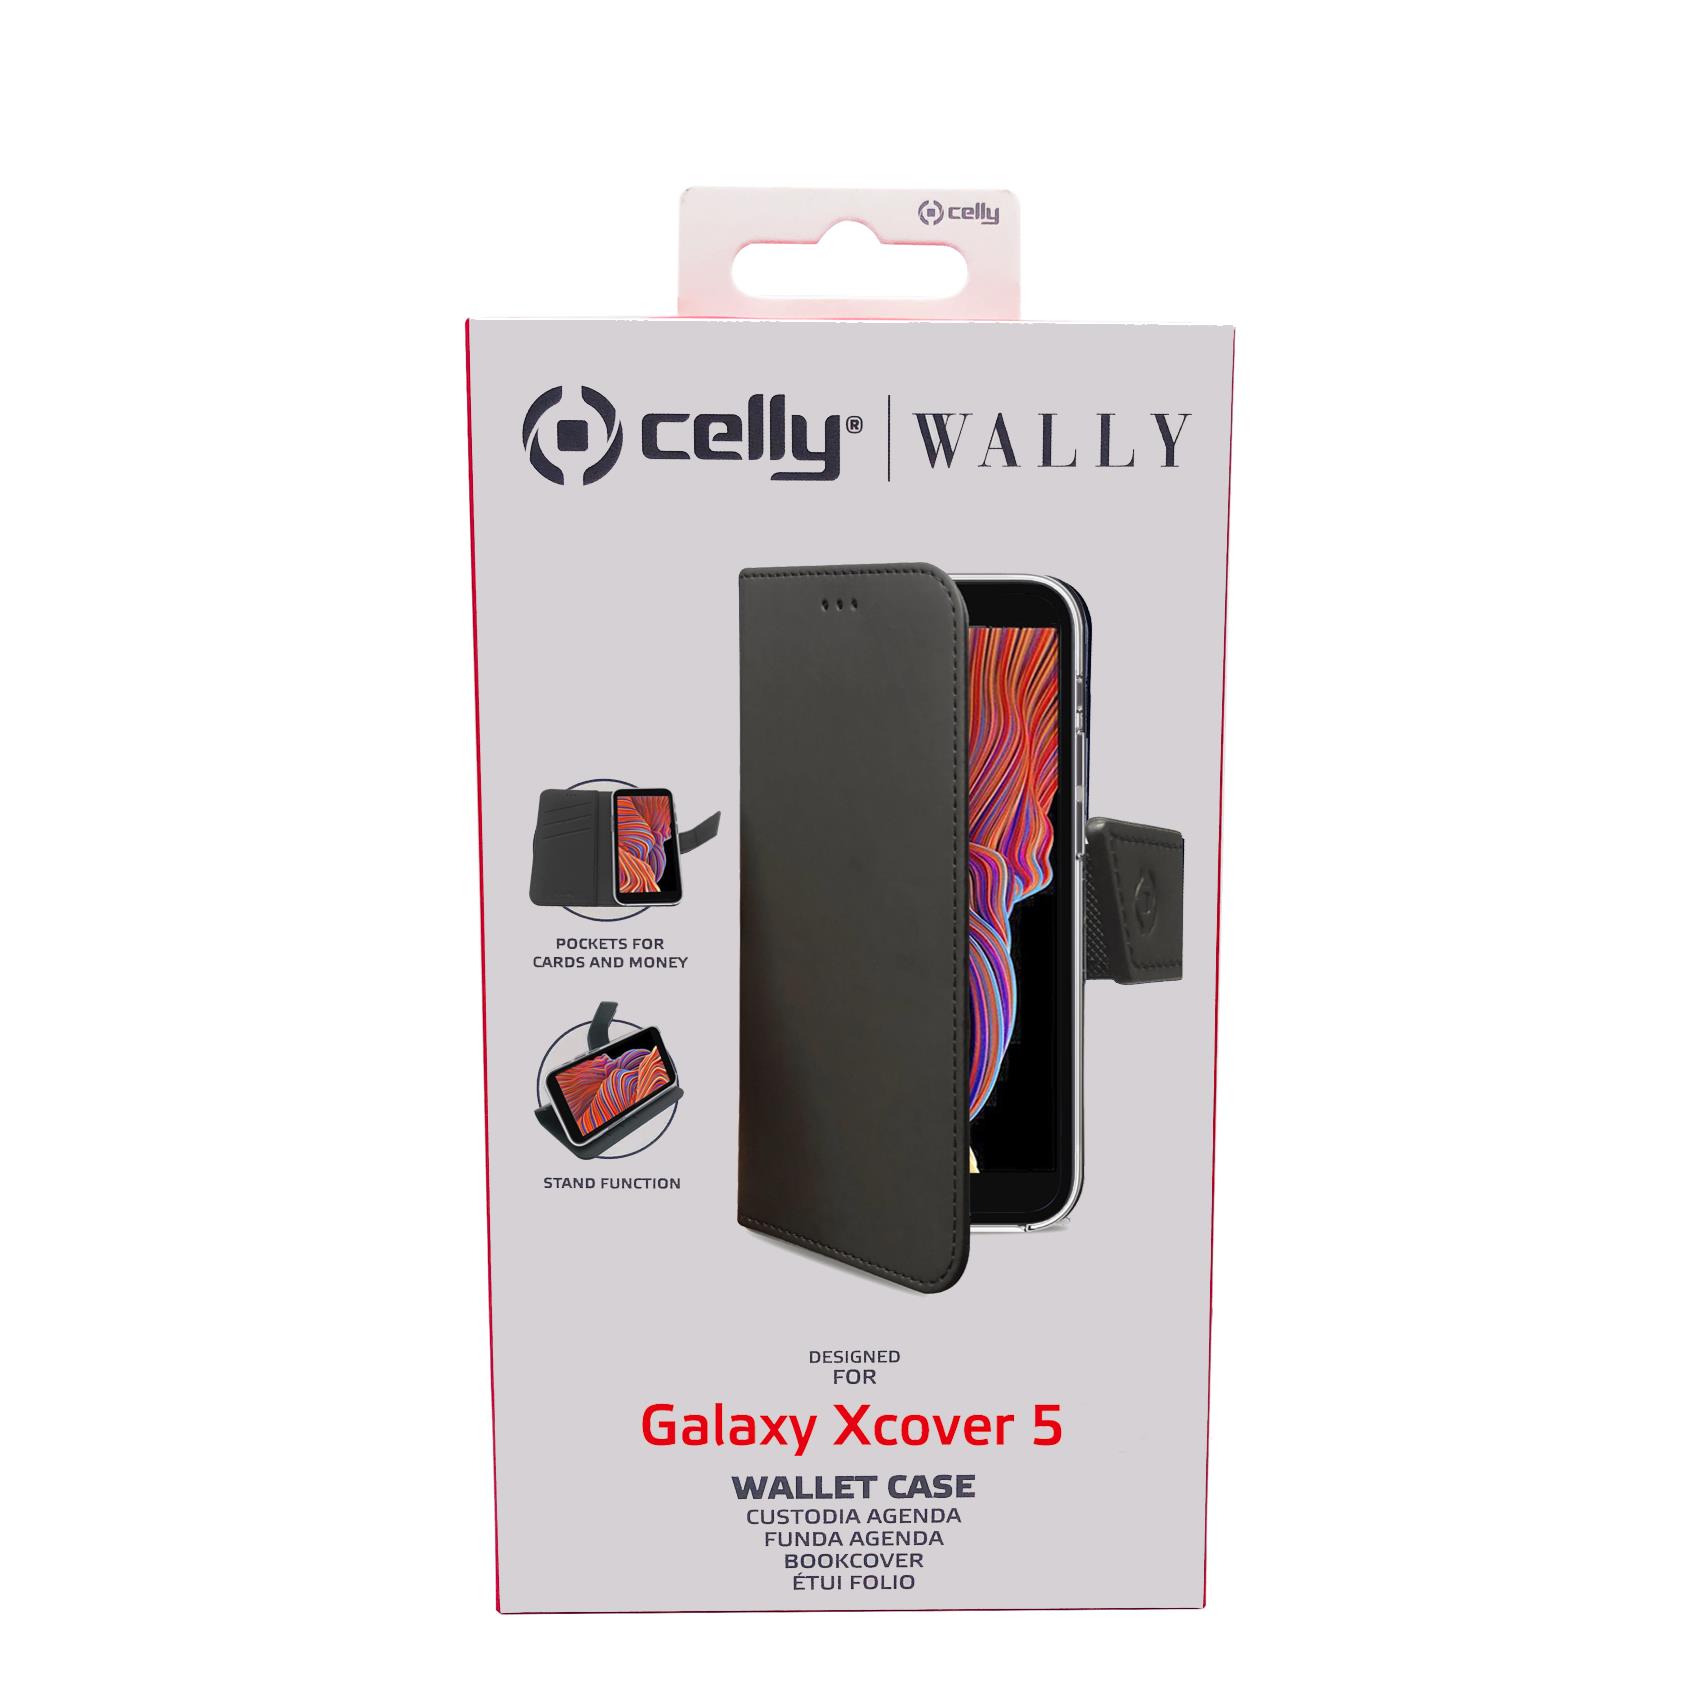 Custodia Celly Samsung Xcover 5 wallet case black WALLY960